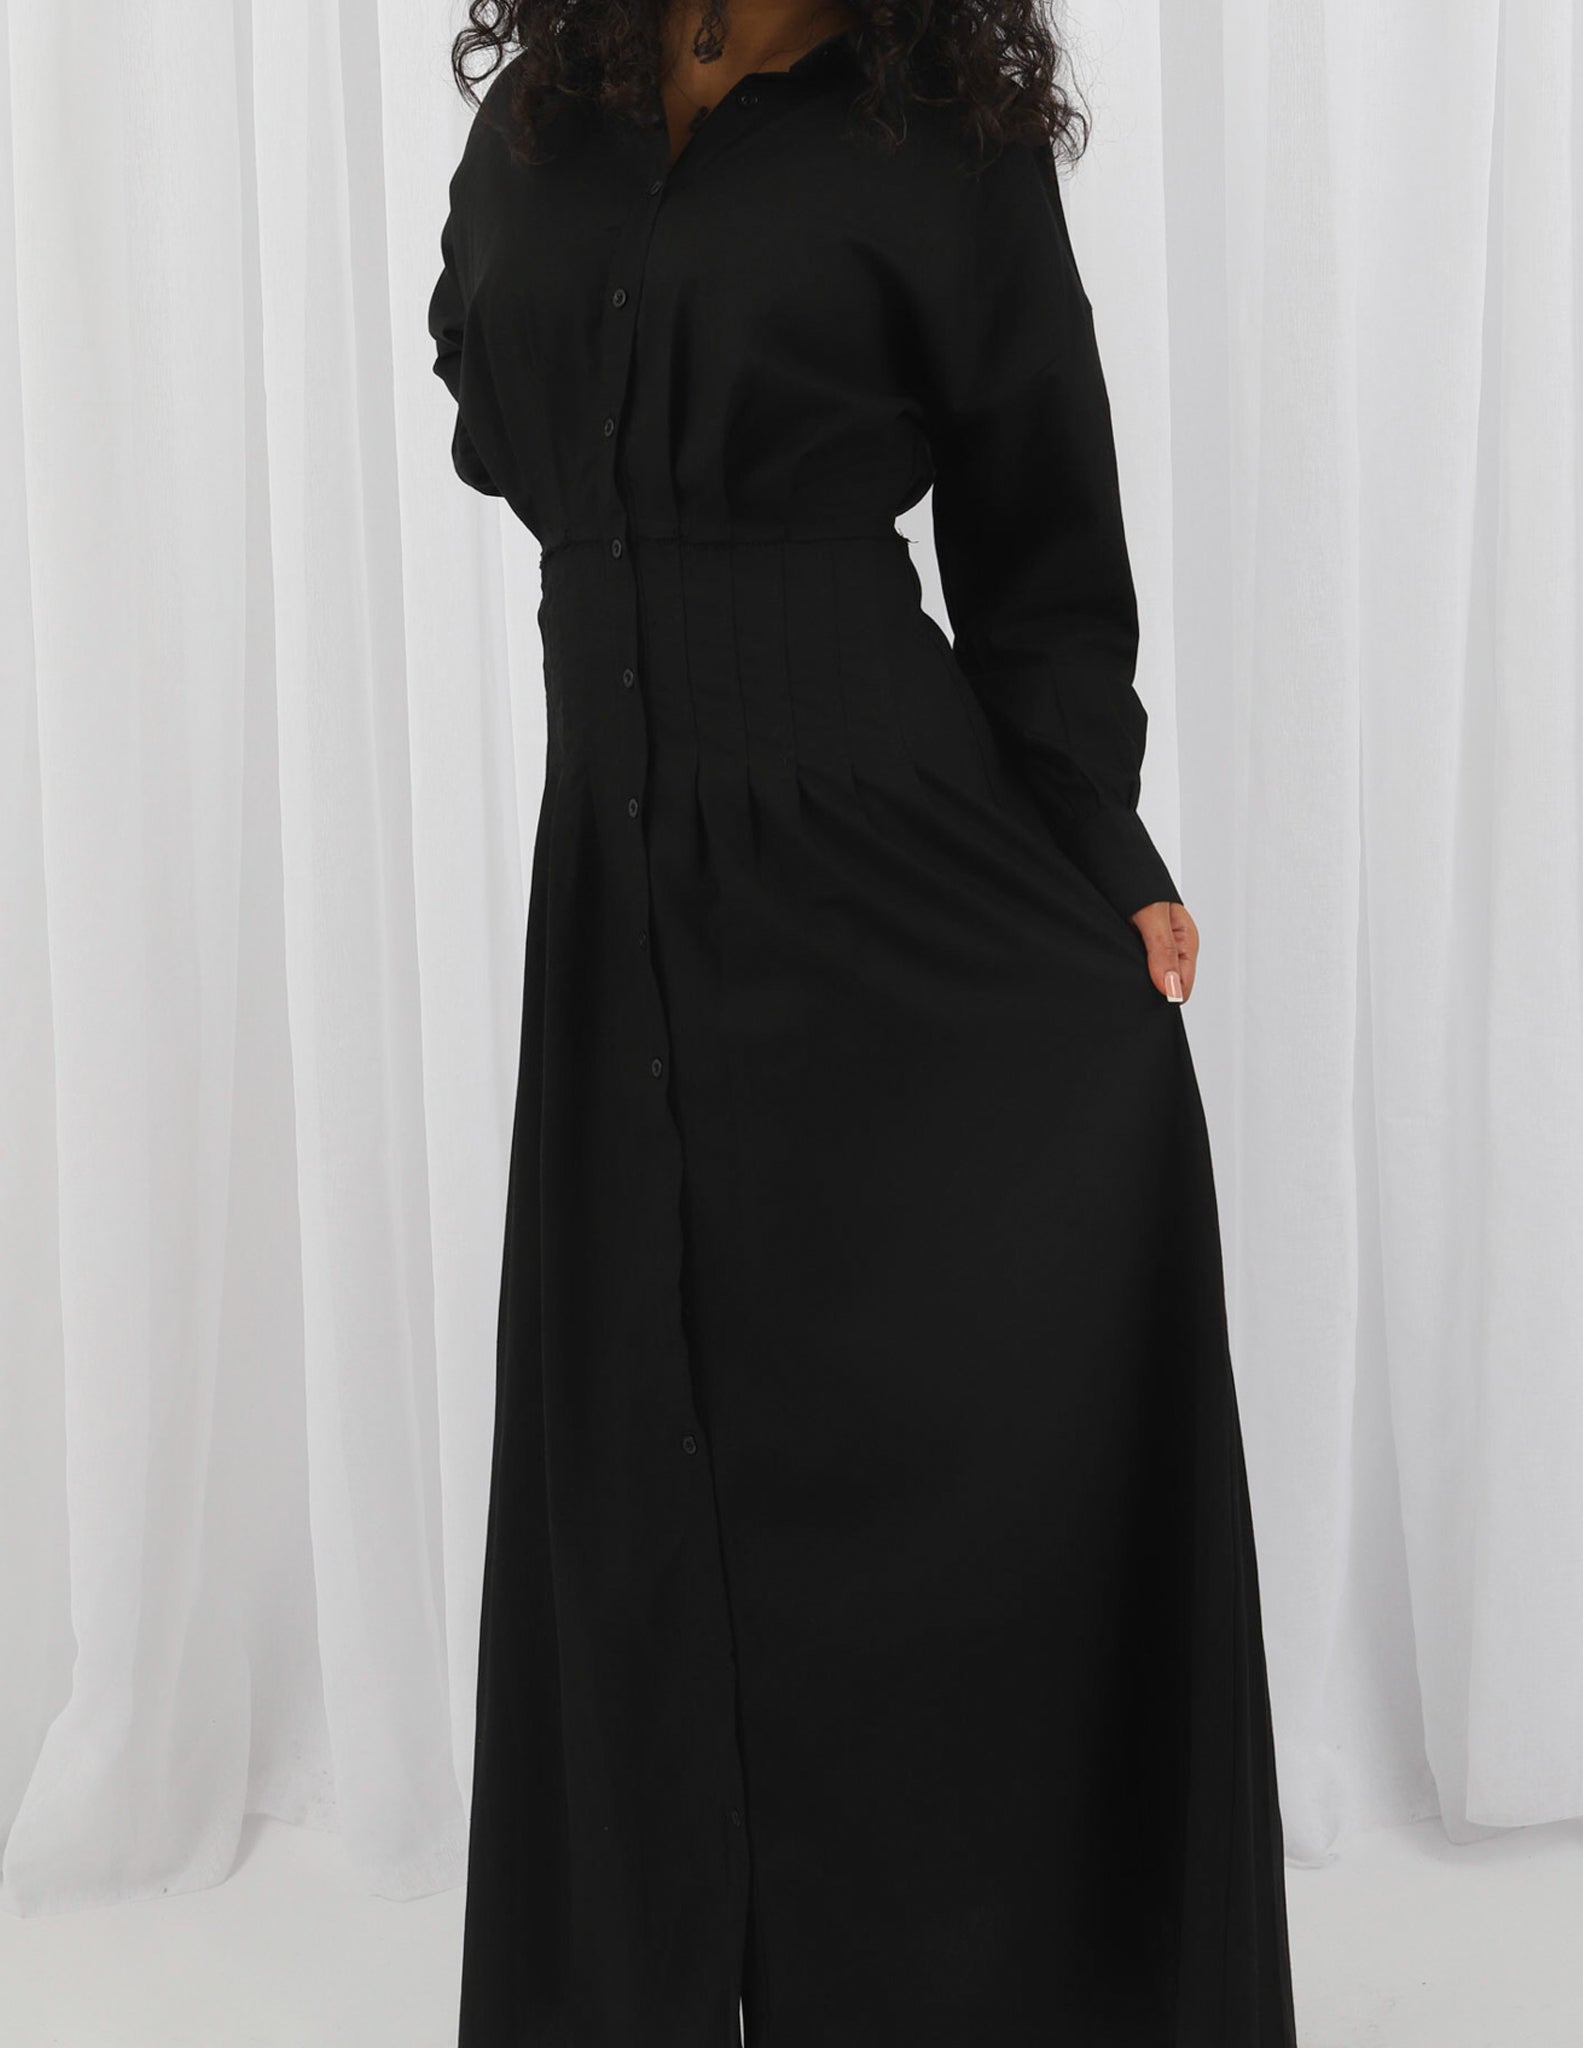 M7920Black-dress-abaya